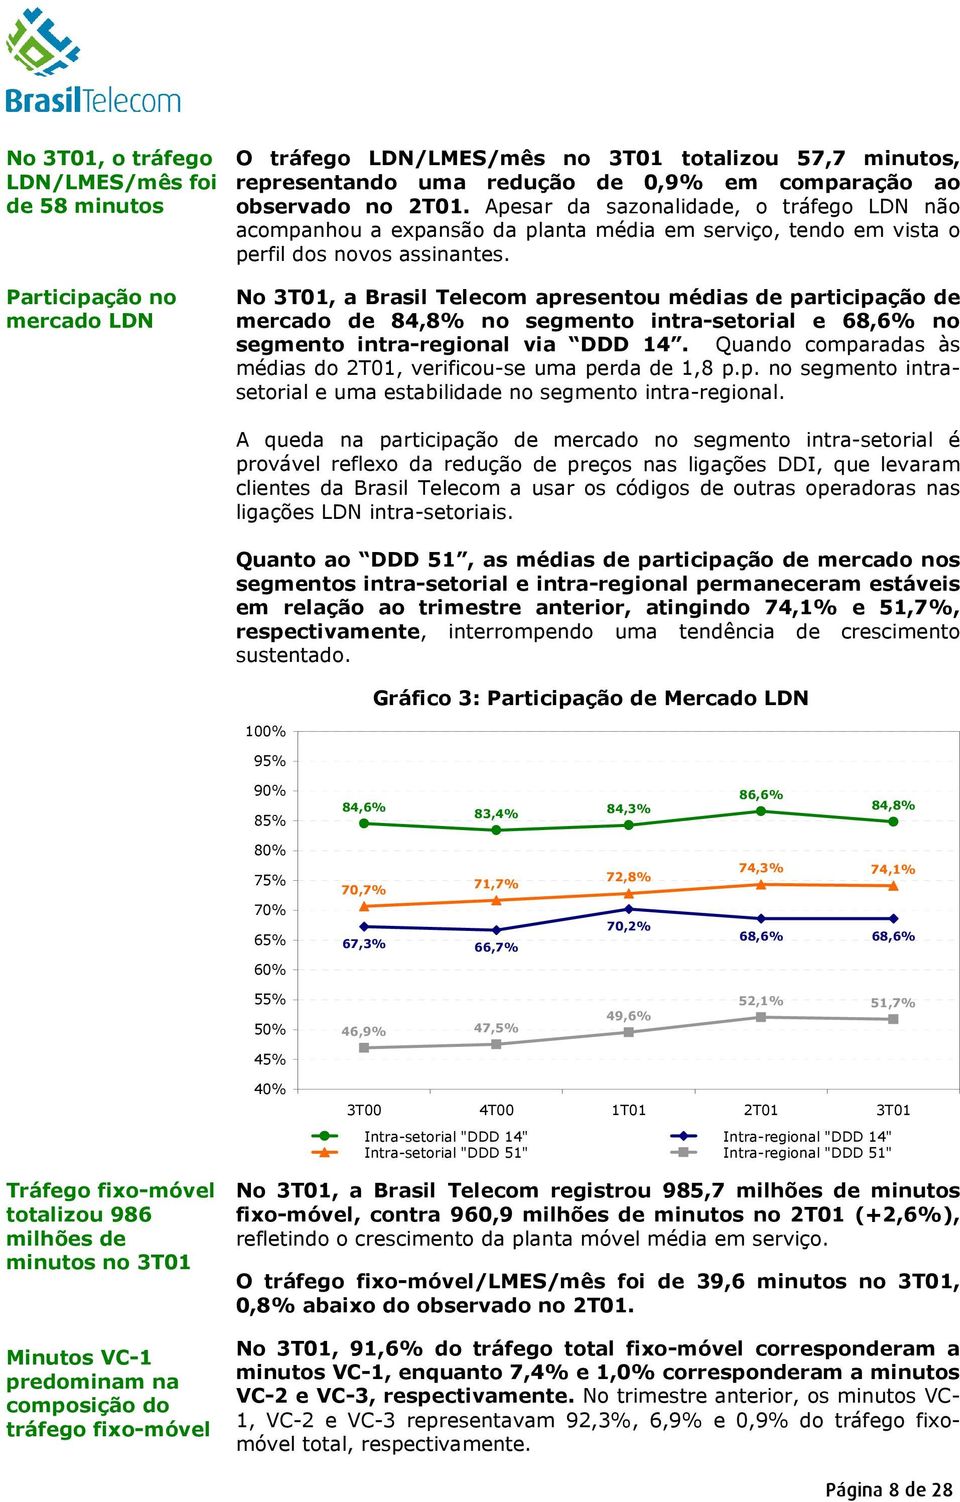 No 3T01, a Brasil Telecom apresentou médias de participação de mercado de 84,8% no segmento intra-setorial e 68,6% no segmento intra-regional via DDD 14.